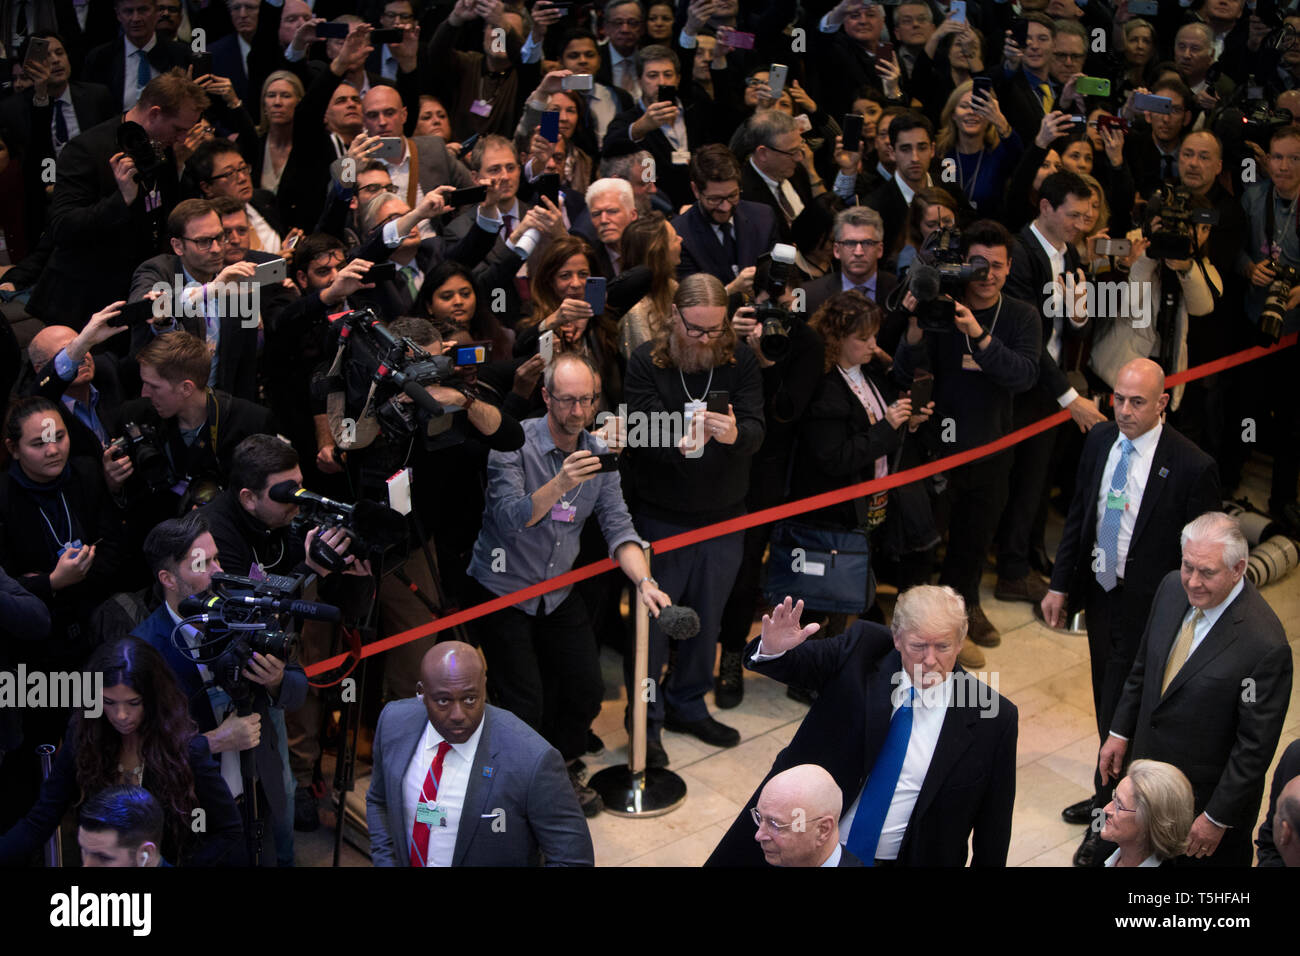 Massive Menge im Kongresszentrum Davos als US-Präsident Donald J. Trumpf kommt zum "World Economic Forum". Der fruehere Staatssekretaer Rex Tillerson geht hinter ihm. Stockfoto